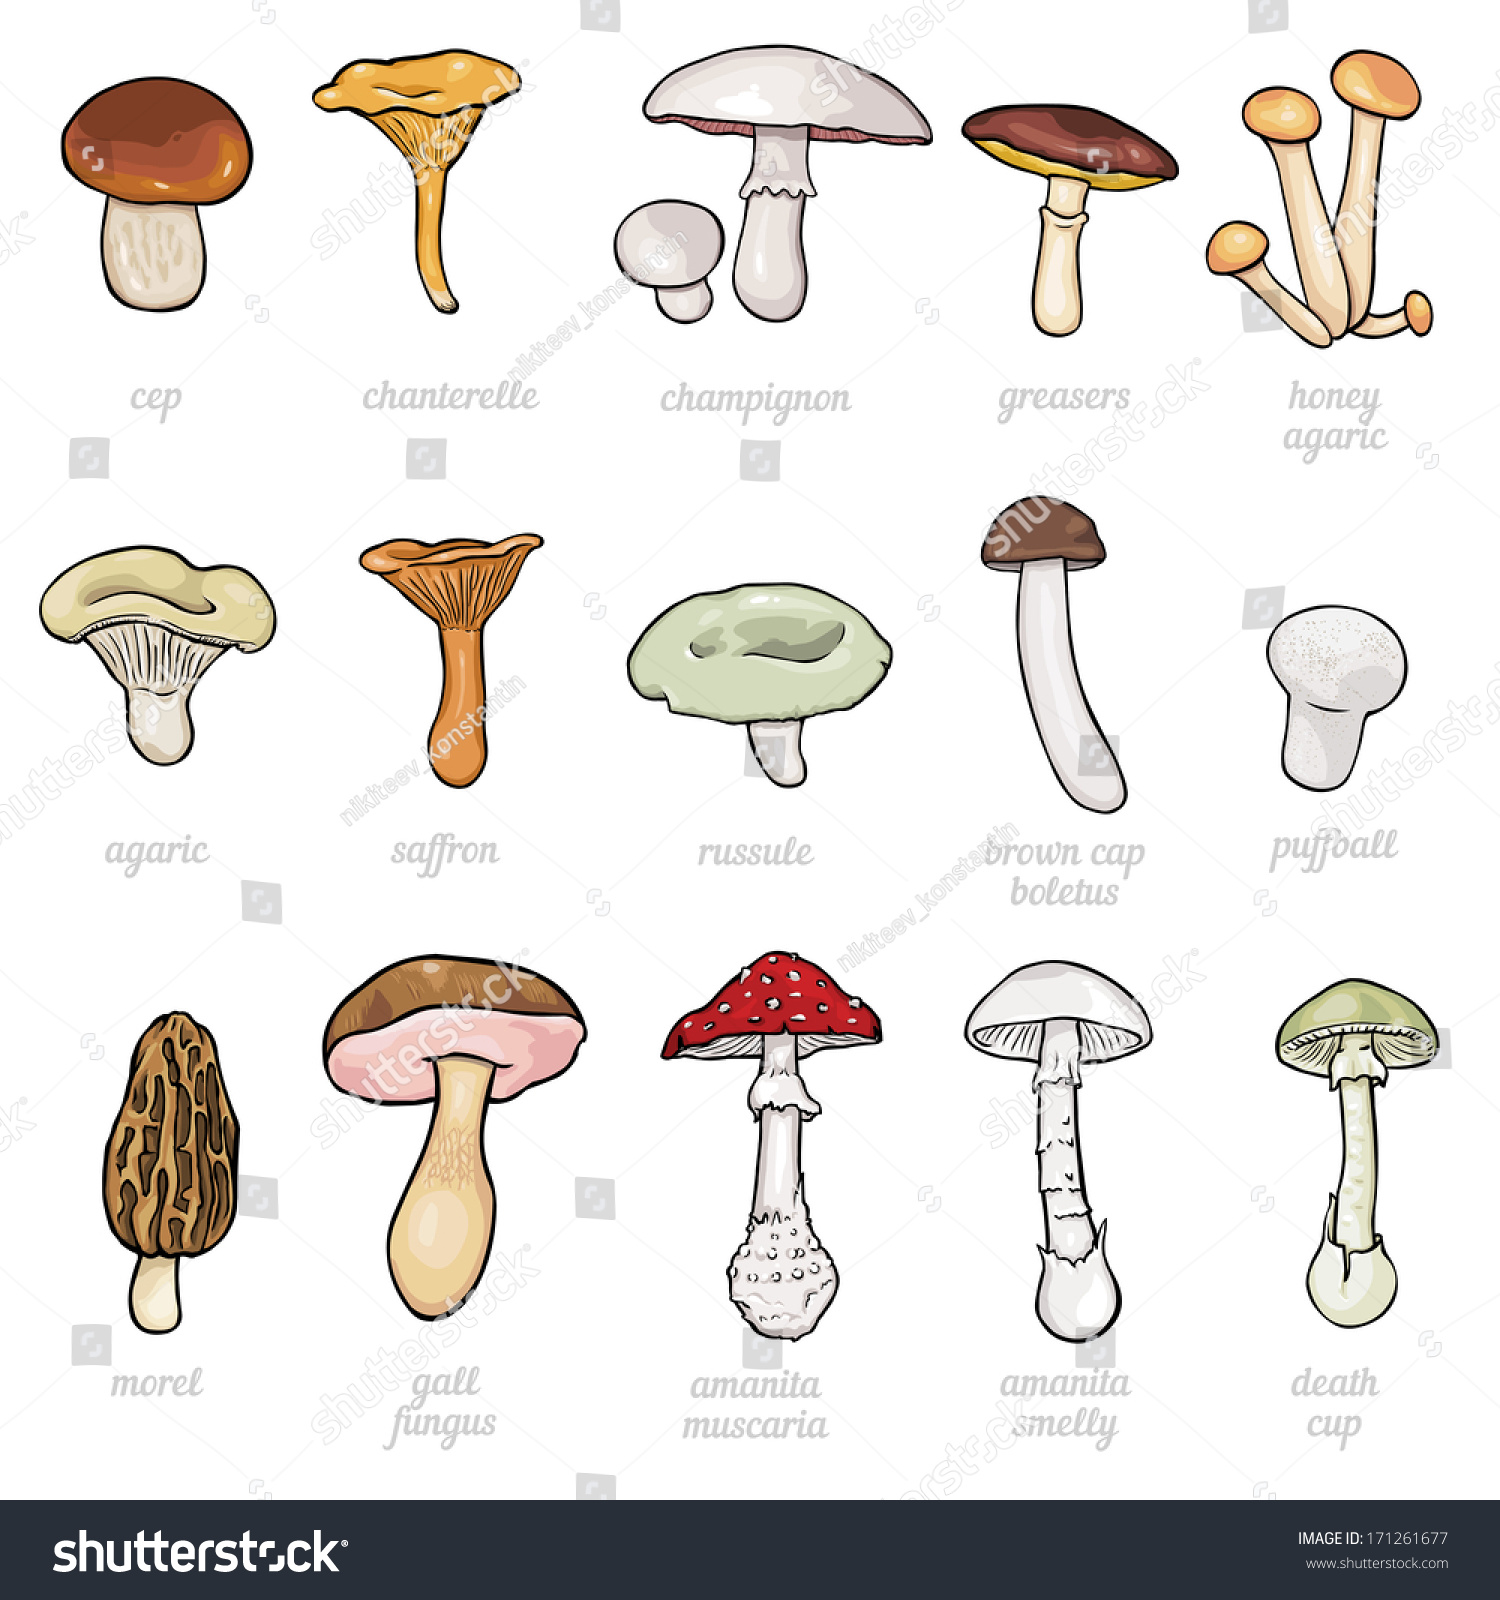 Съедобные грибы для срисовки